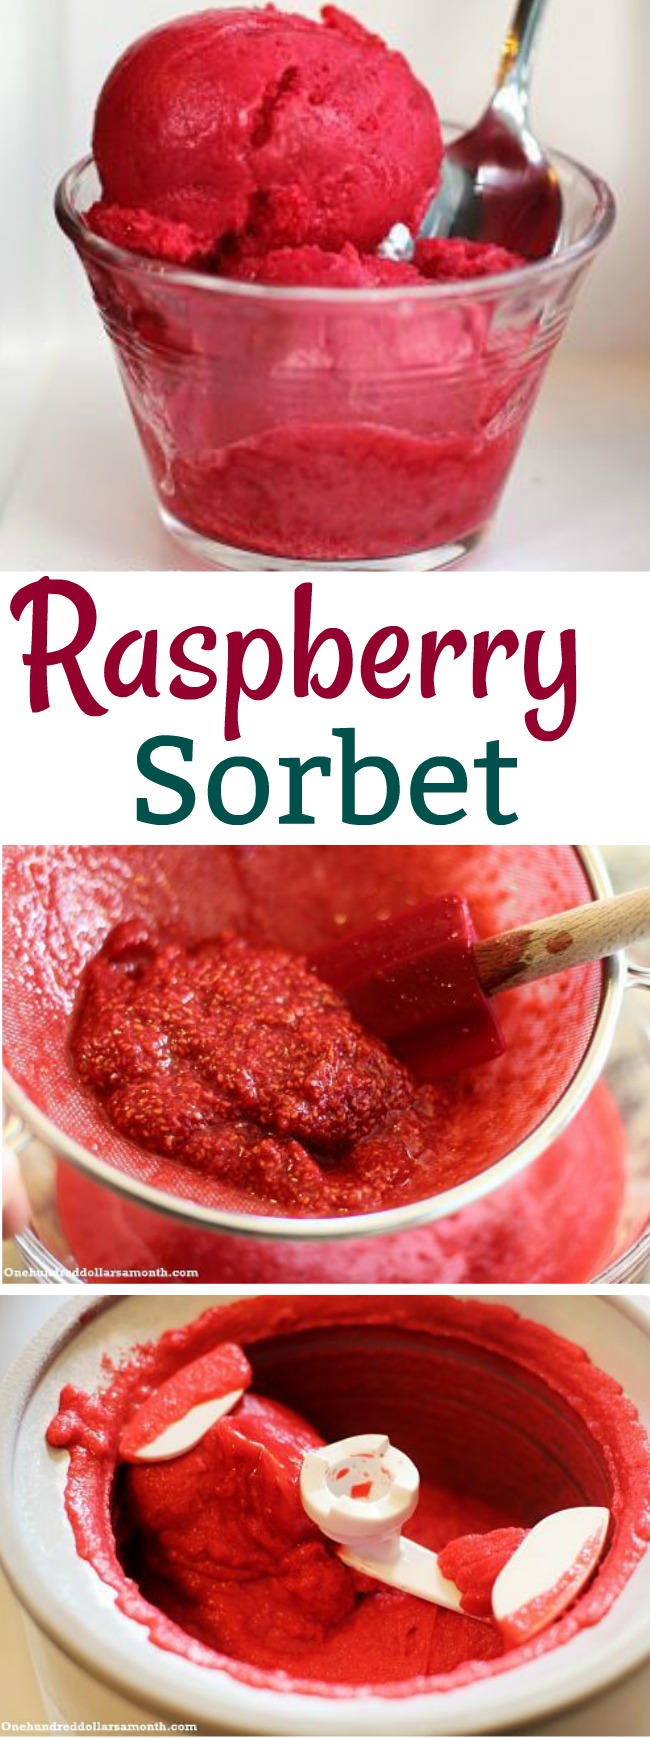 Recipe – How to Make Raspberry Sorbet